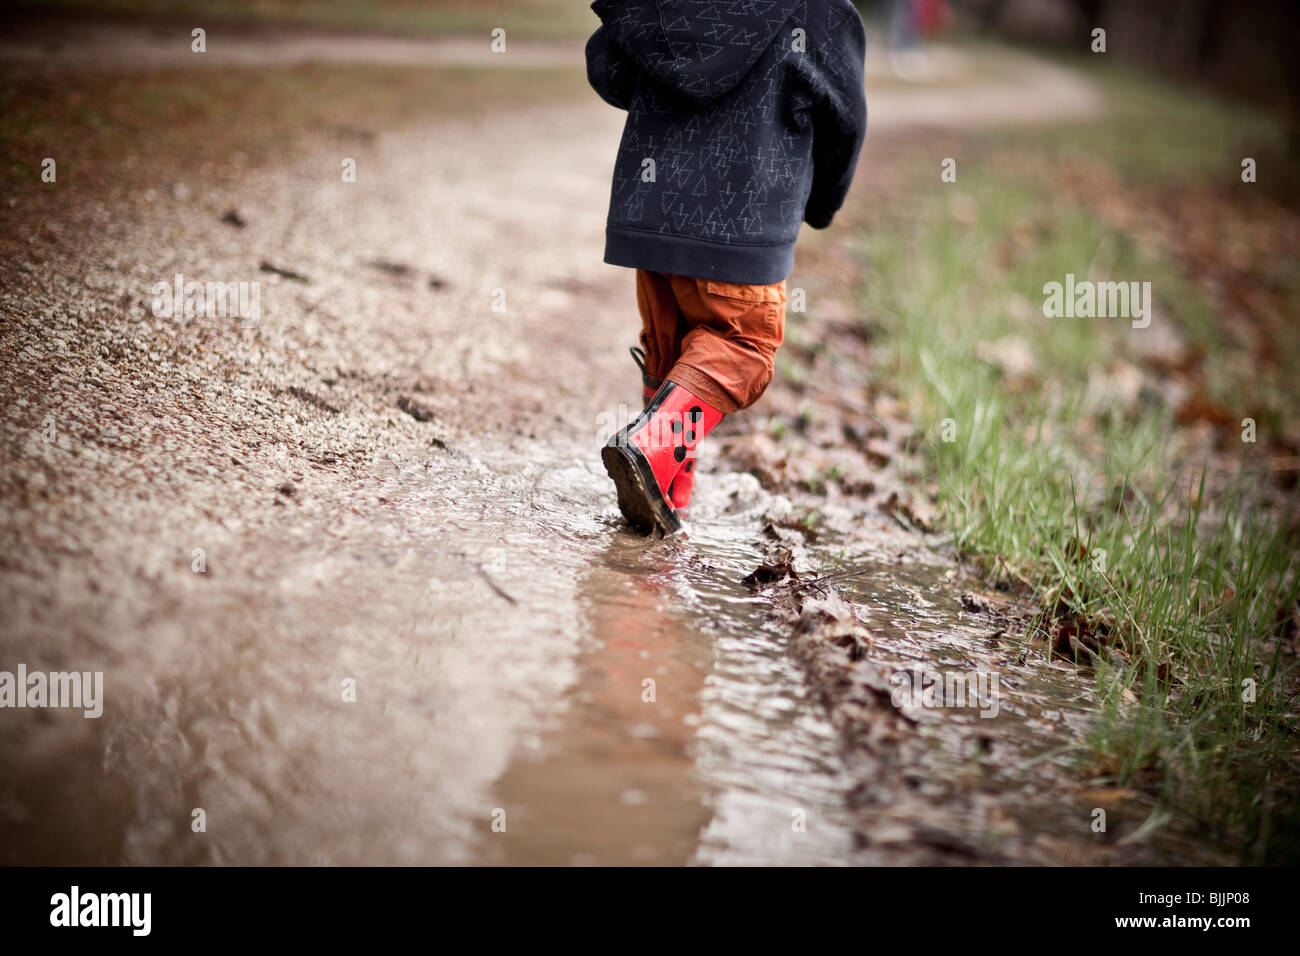 Joven llevaba botas de agua, camina a través de un charco de agua. Foto de stock